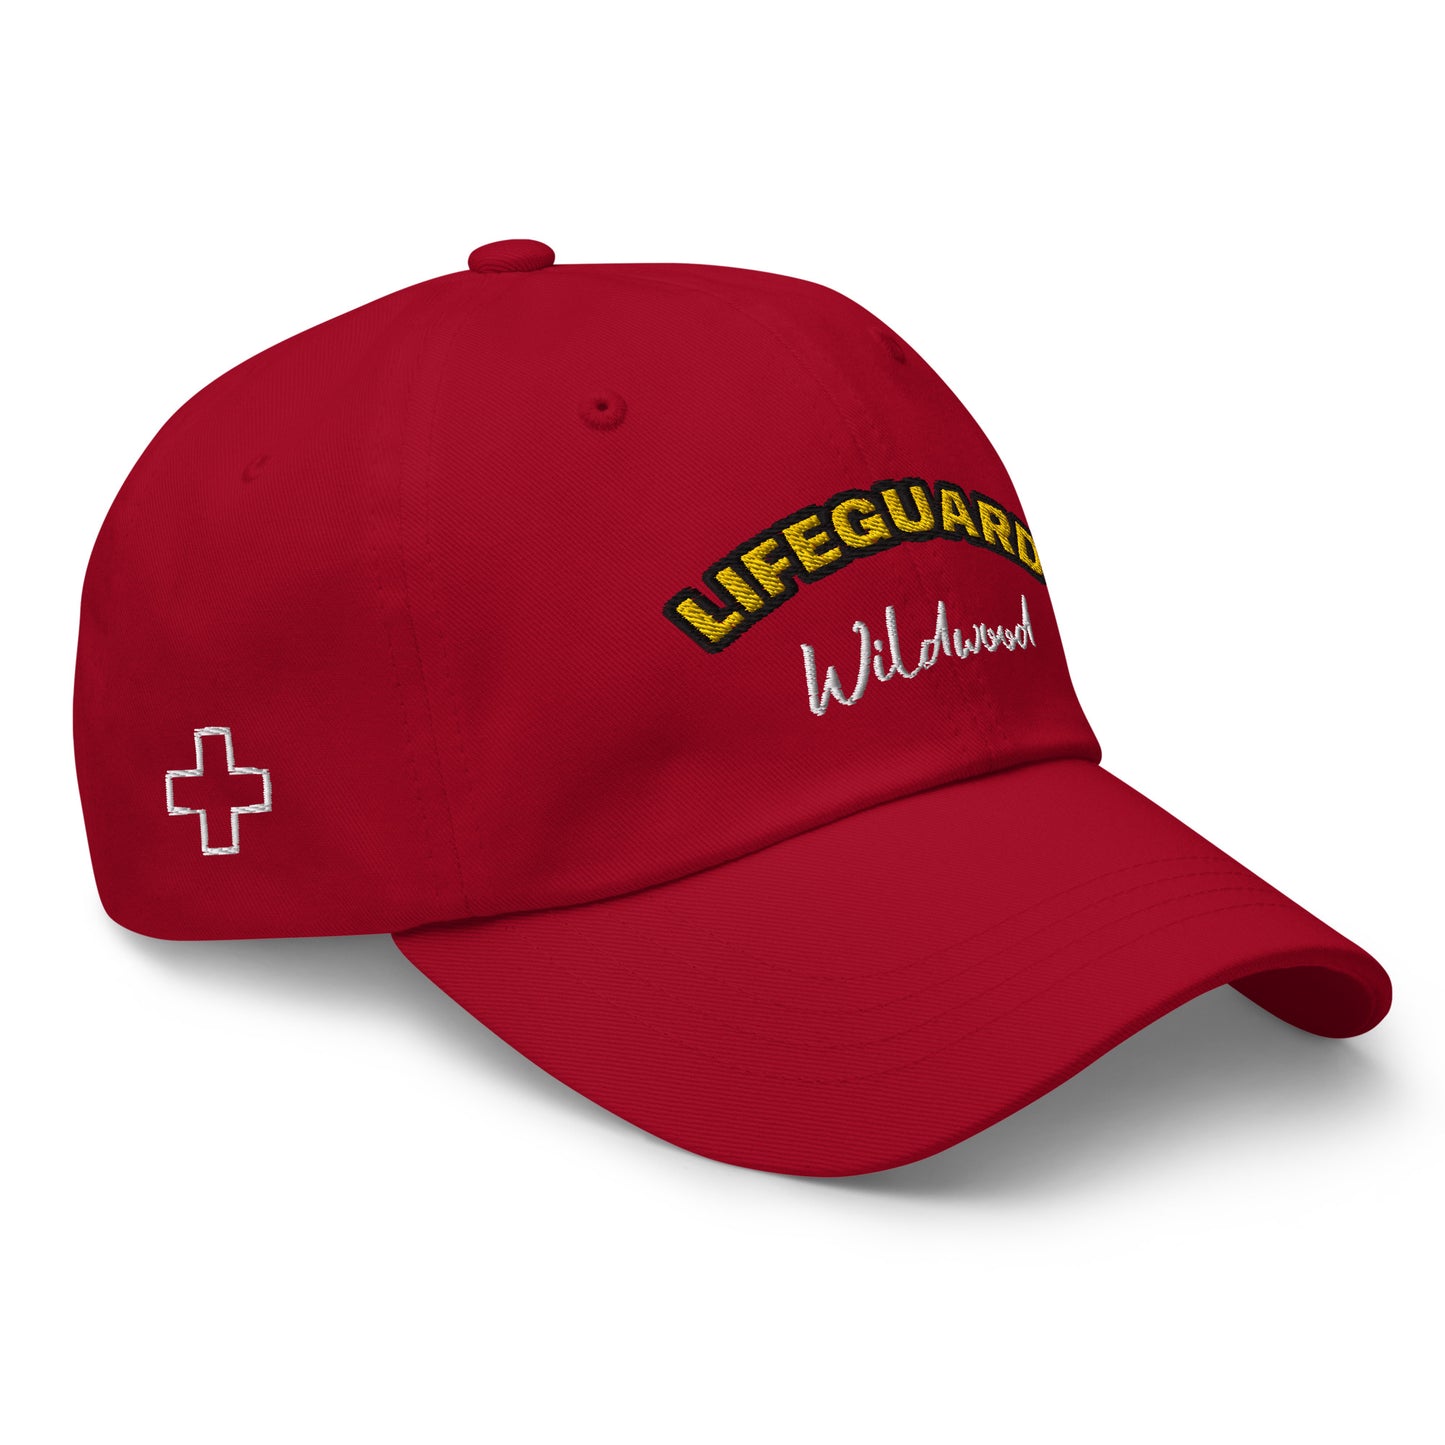 Wildwood Lifeguard hat